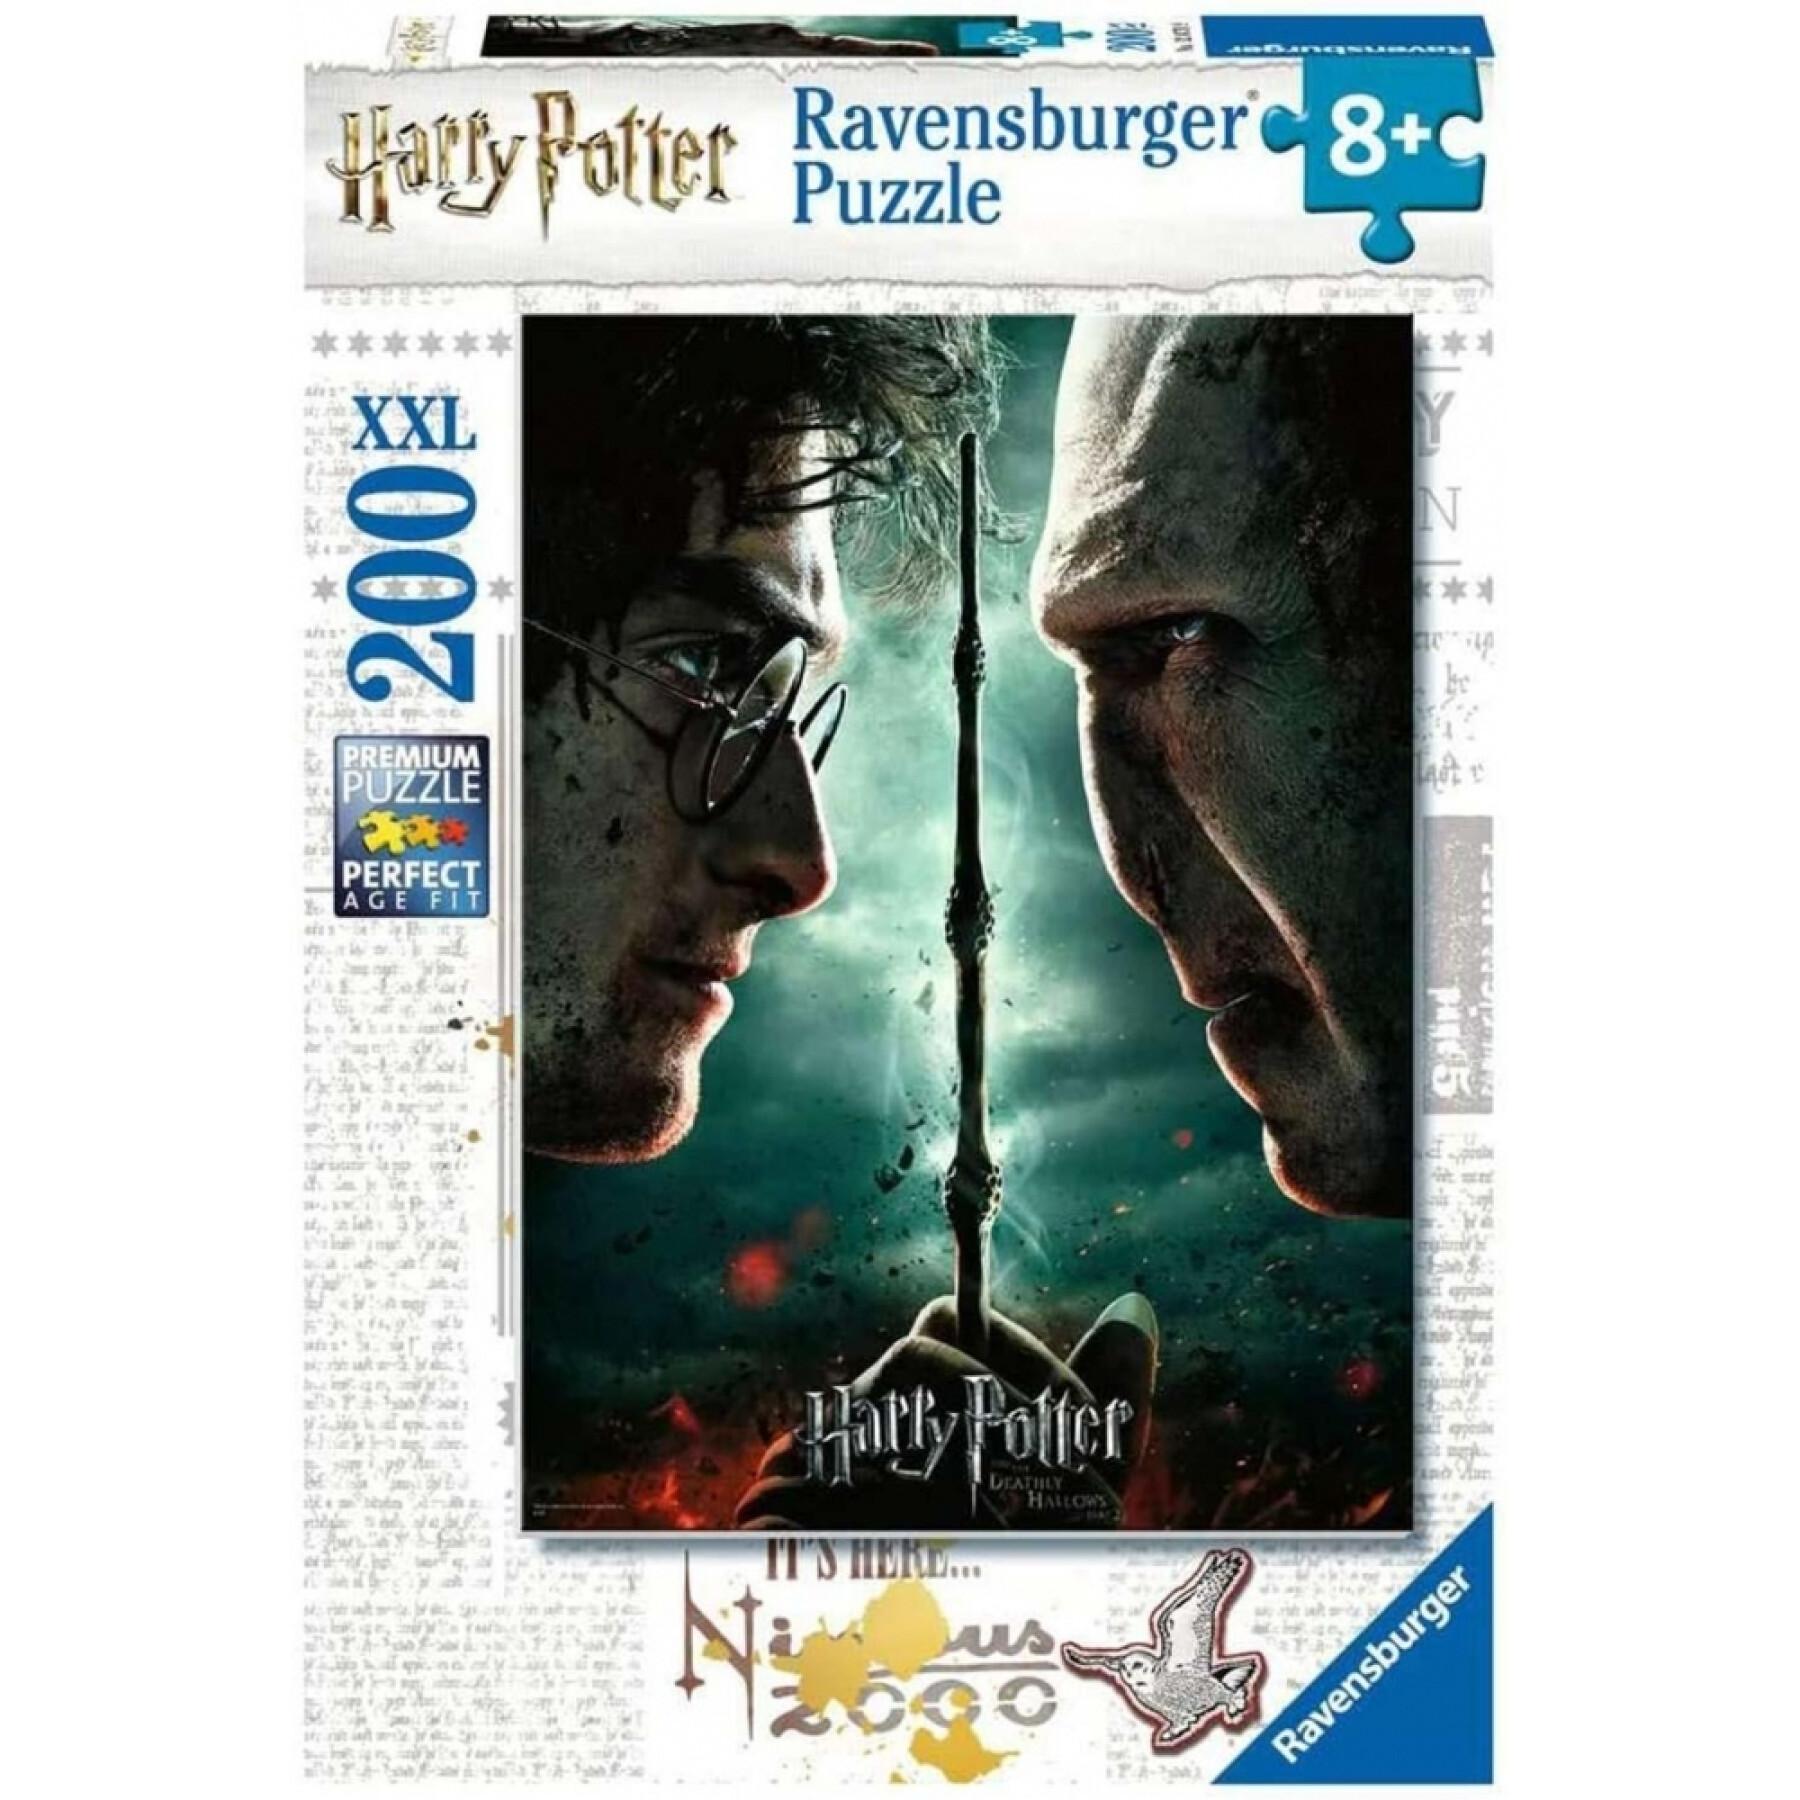 Puzzle de 200 piezas Harry Potter XXL Premium